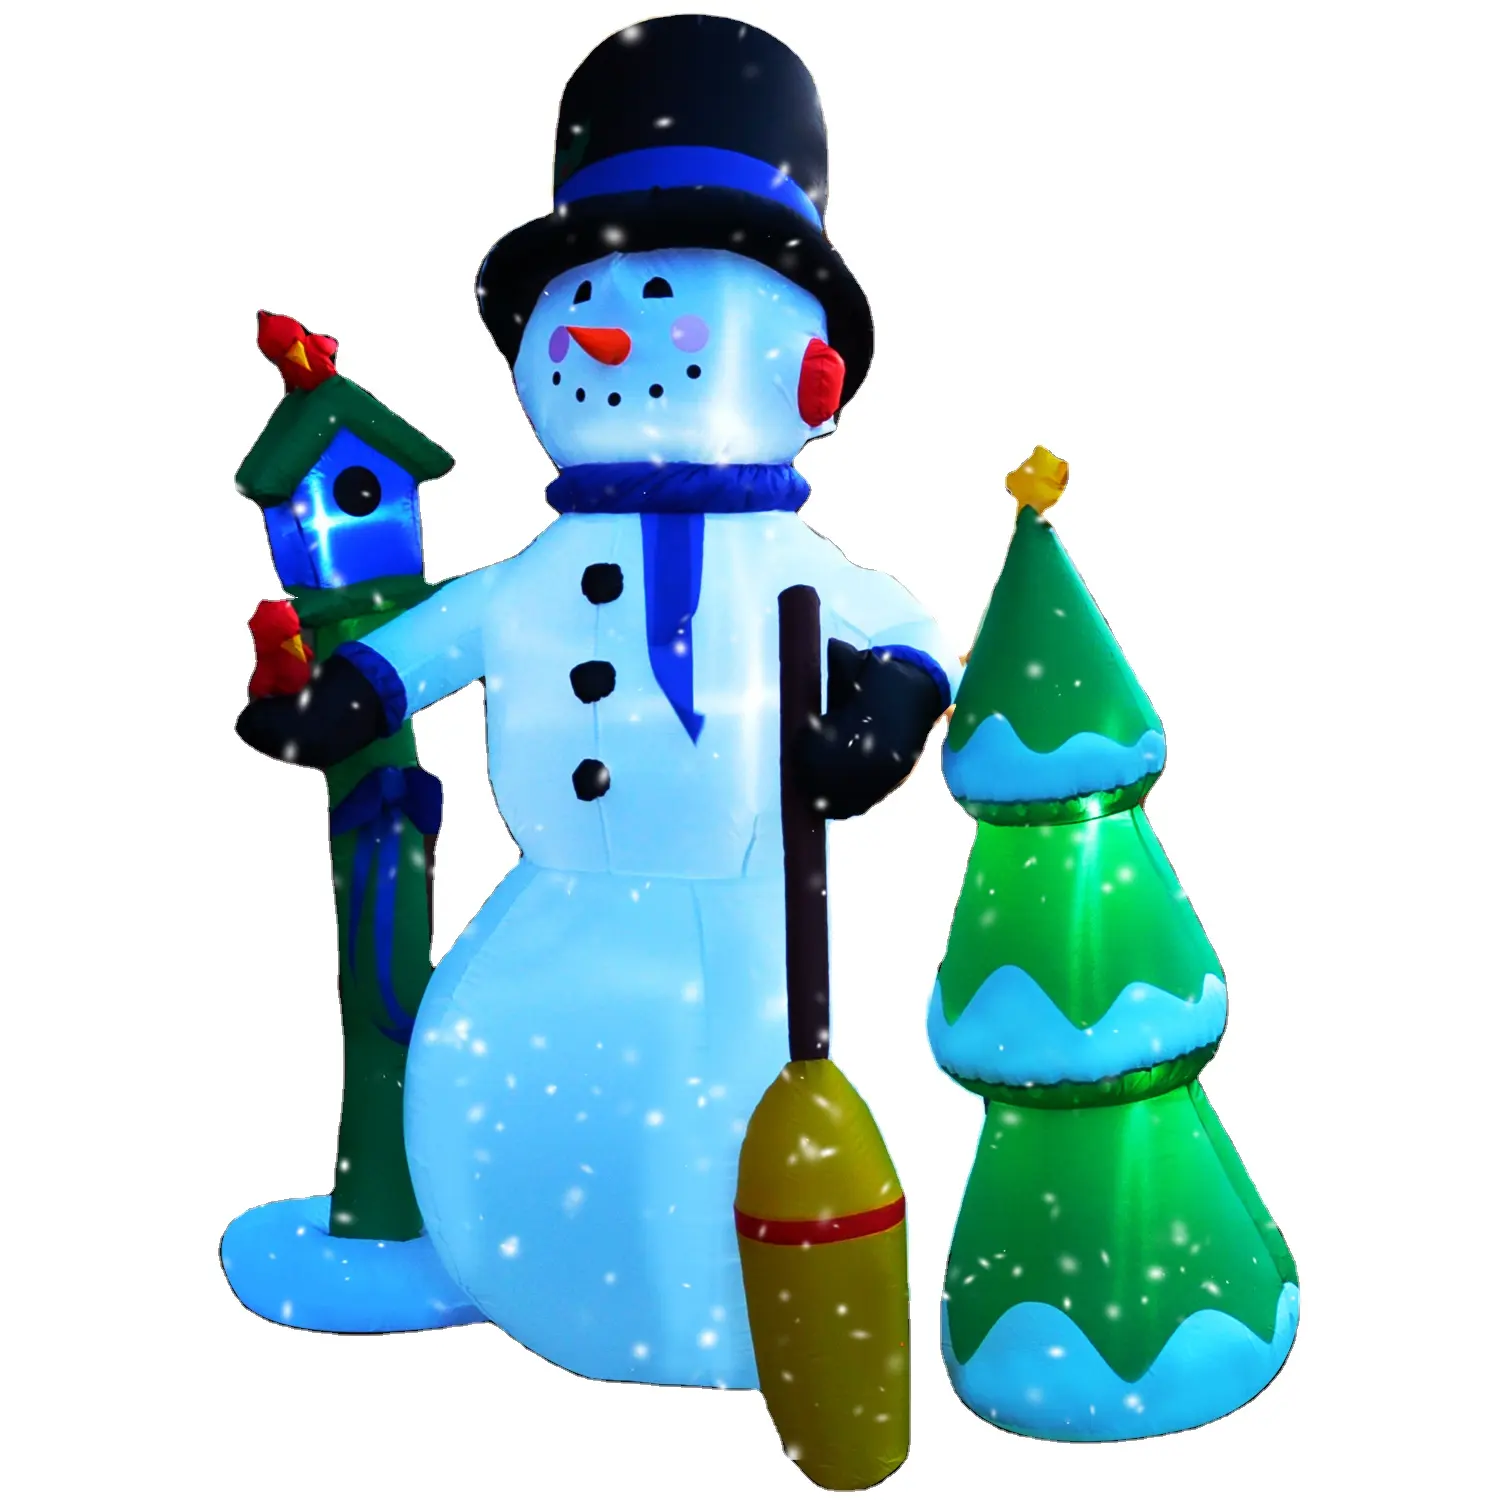 High Snowman aufblasbarer Schneemann Weihnachts dekoration aufblasbarer Schneemann mit Laternen pfahl und Besom